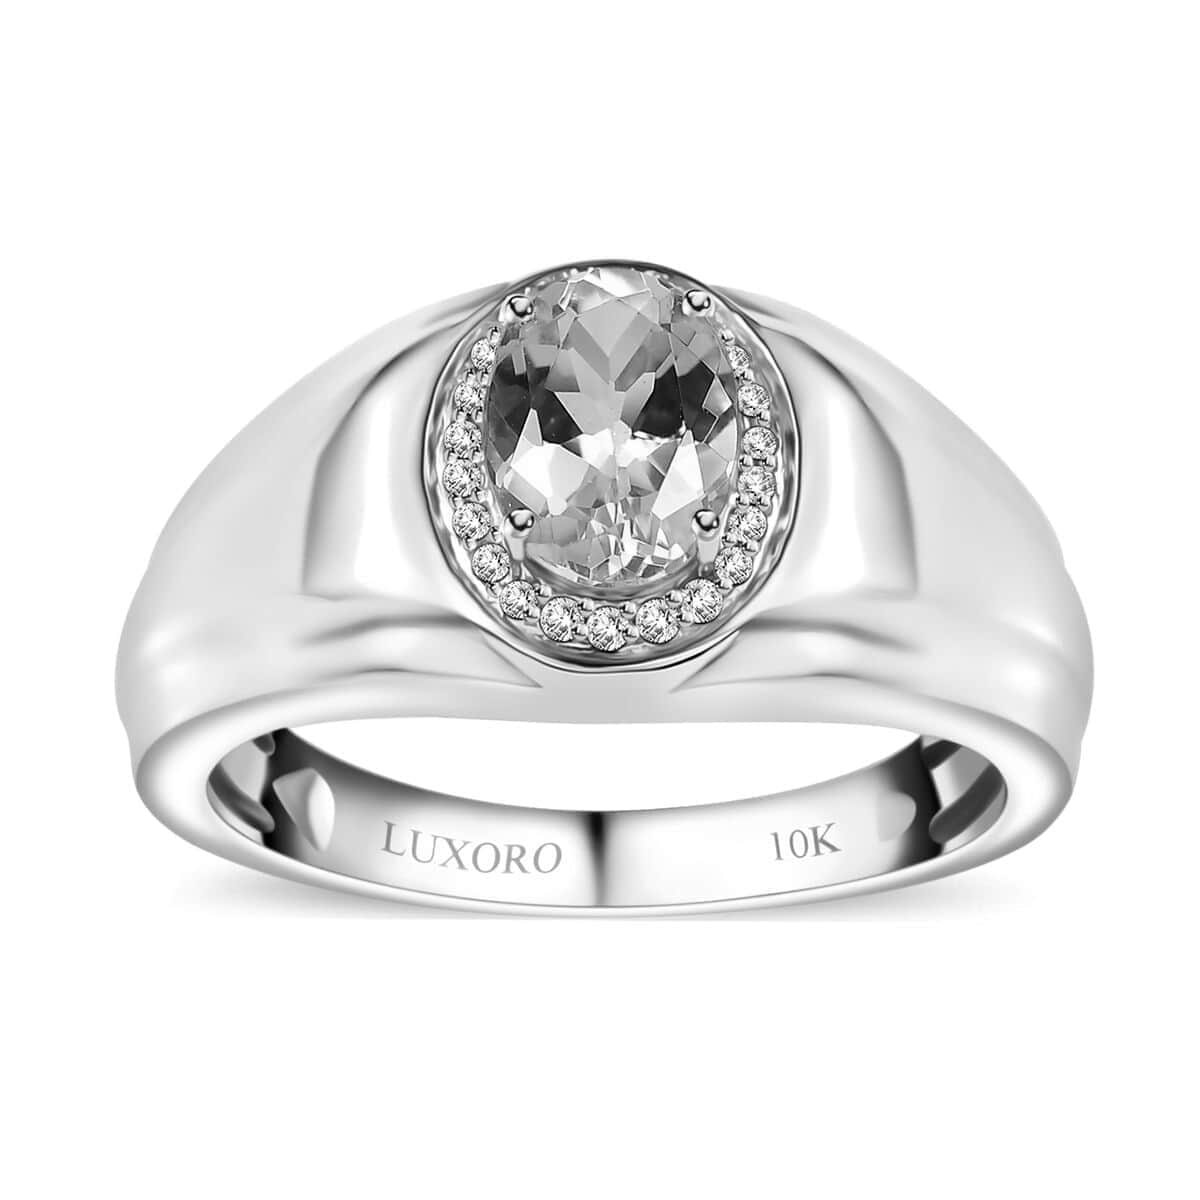 Luxoro 10K White Gold Premium Santa Maria Aquamarine and G-H I2 Diamond Men's Ring (Size 9.0) 6.15 Grams 1.20 ctw image number 0